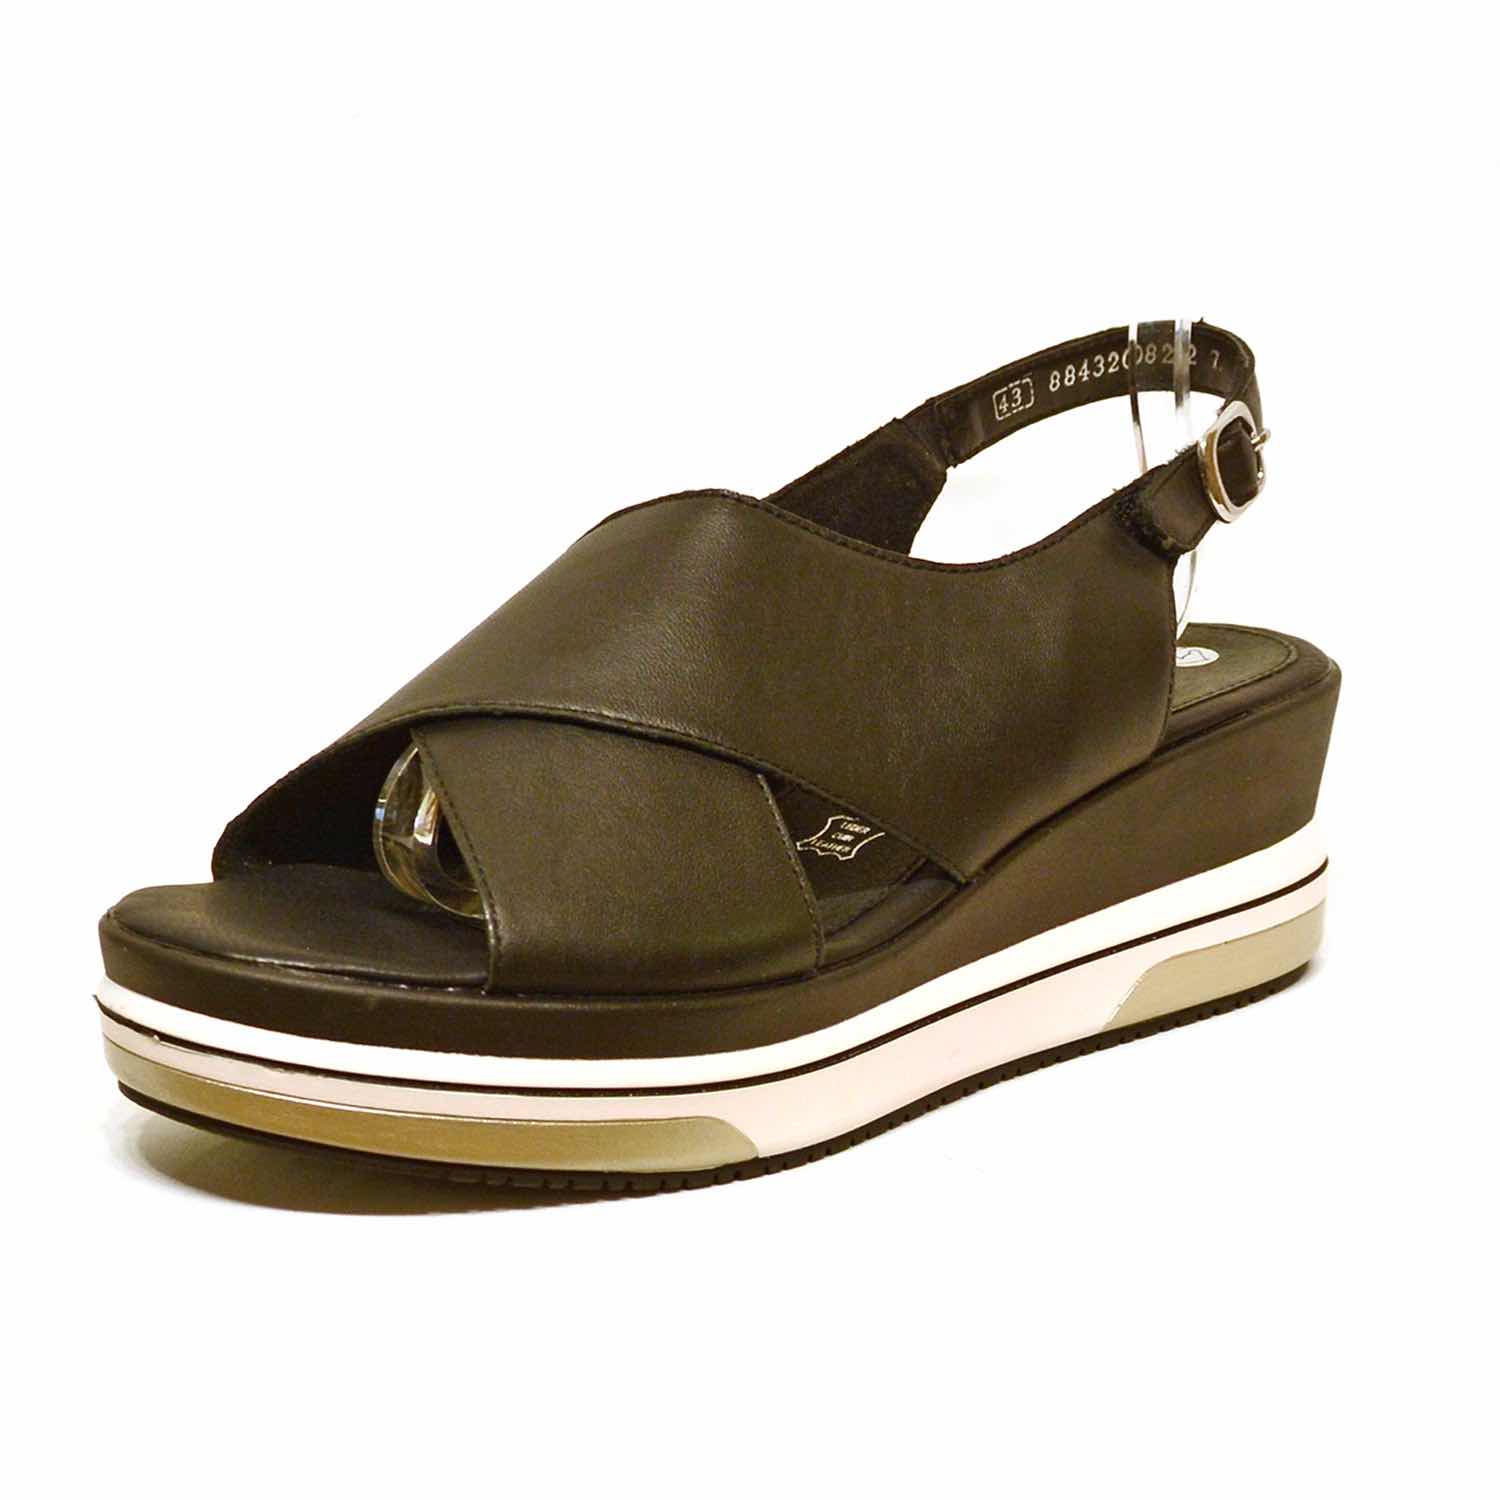 sandalettes femme grande taille du 40 au 48, cuir lisse noir, talon de 5 à 6 cm, à patins mode tendance sandales talons hauts detente talons compensés, chaussures pour l'été